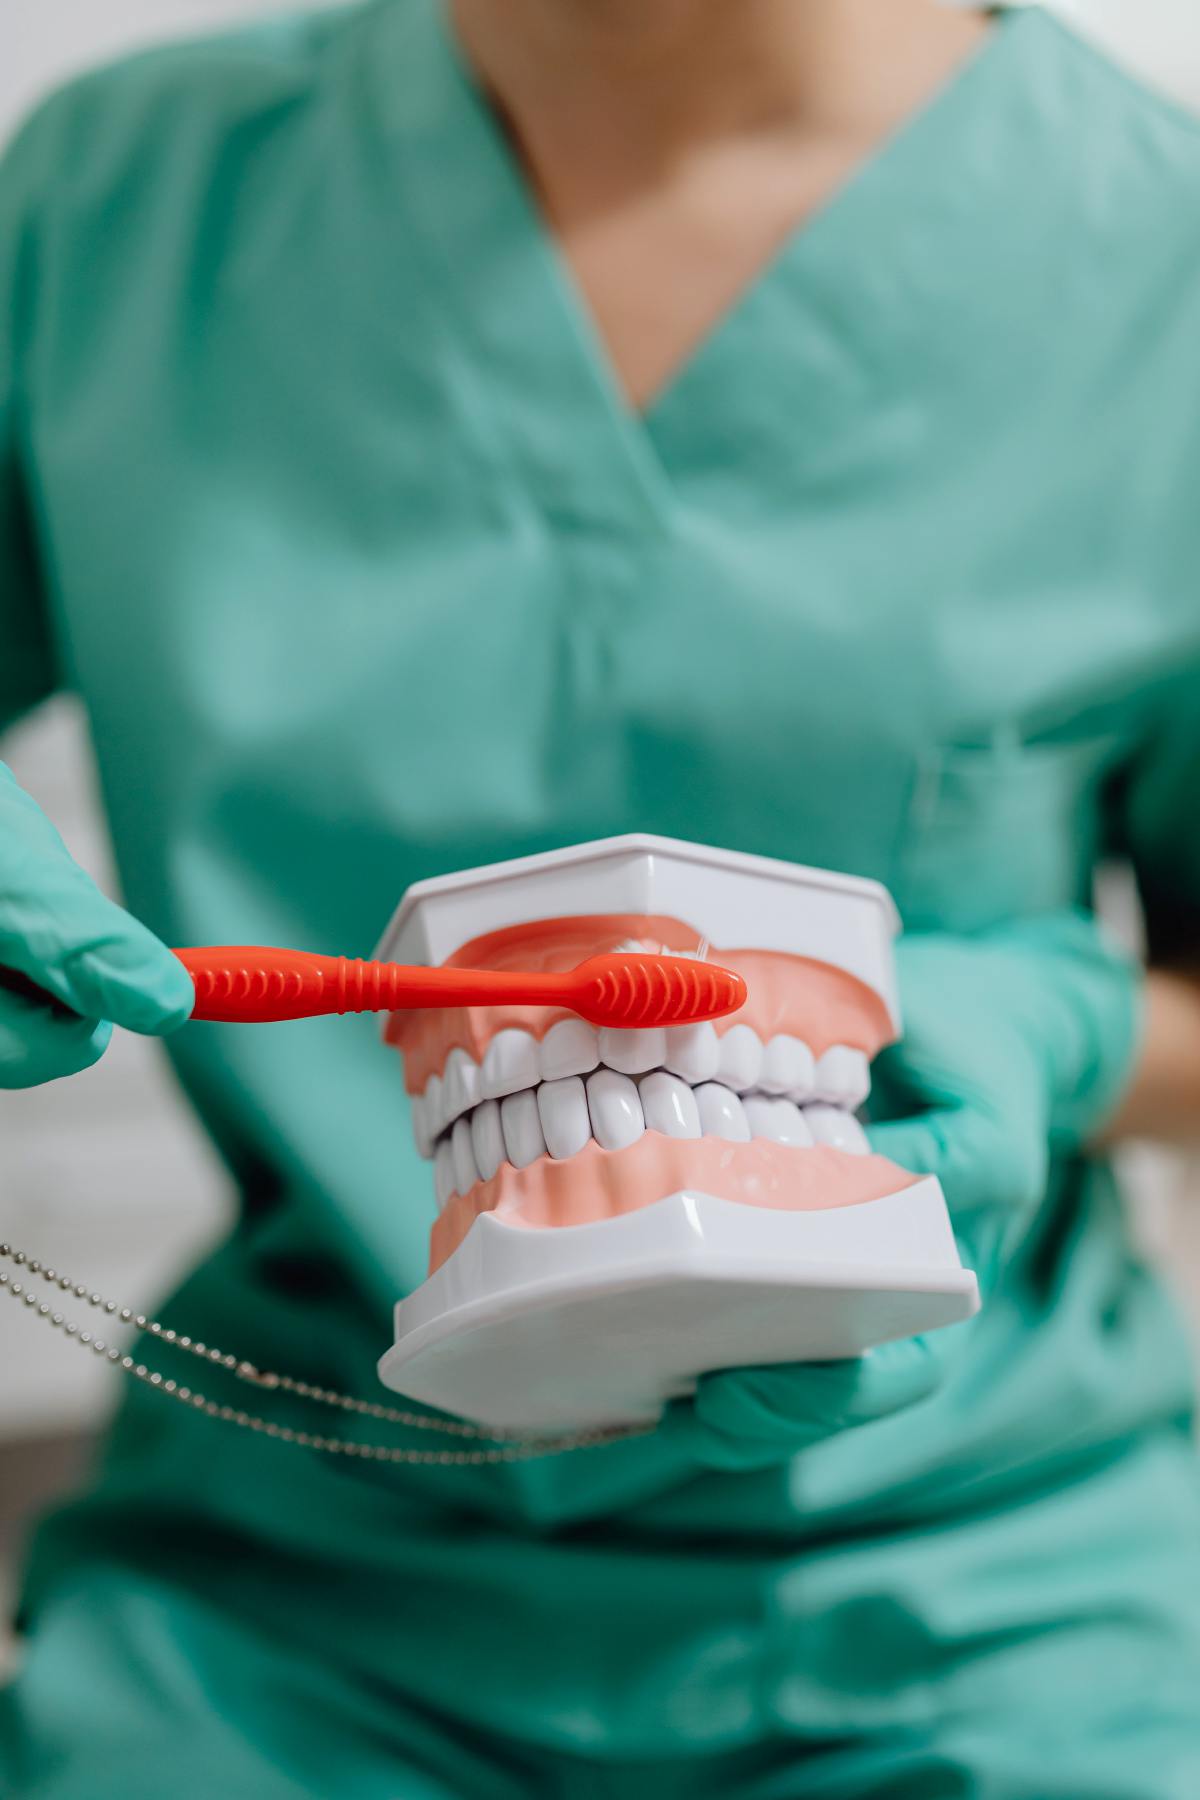 MEMBERUS gigi secara biasa kadangkala tidak dapat membersihkan kotoran akibat kesan menghisap vape di gigi.